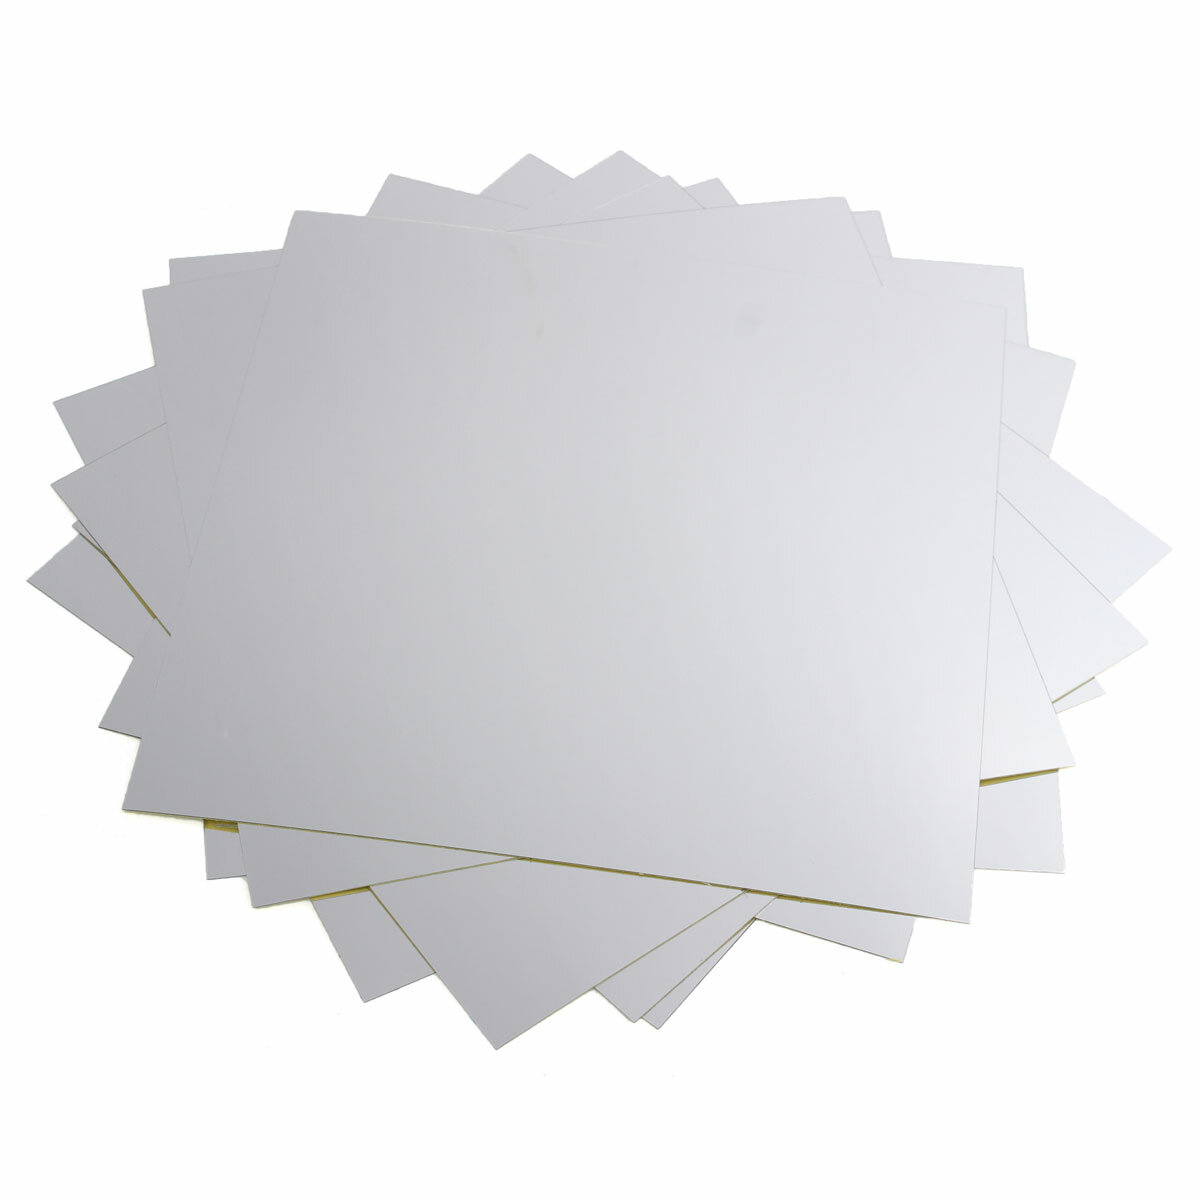 9st 15x15cm spiegelende bladen vierkante niet-glazen spiegels tegels zelfklevende spiegel muursticke